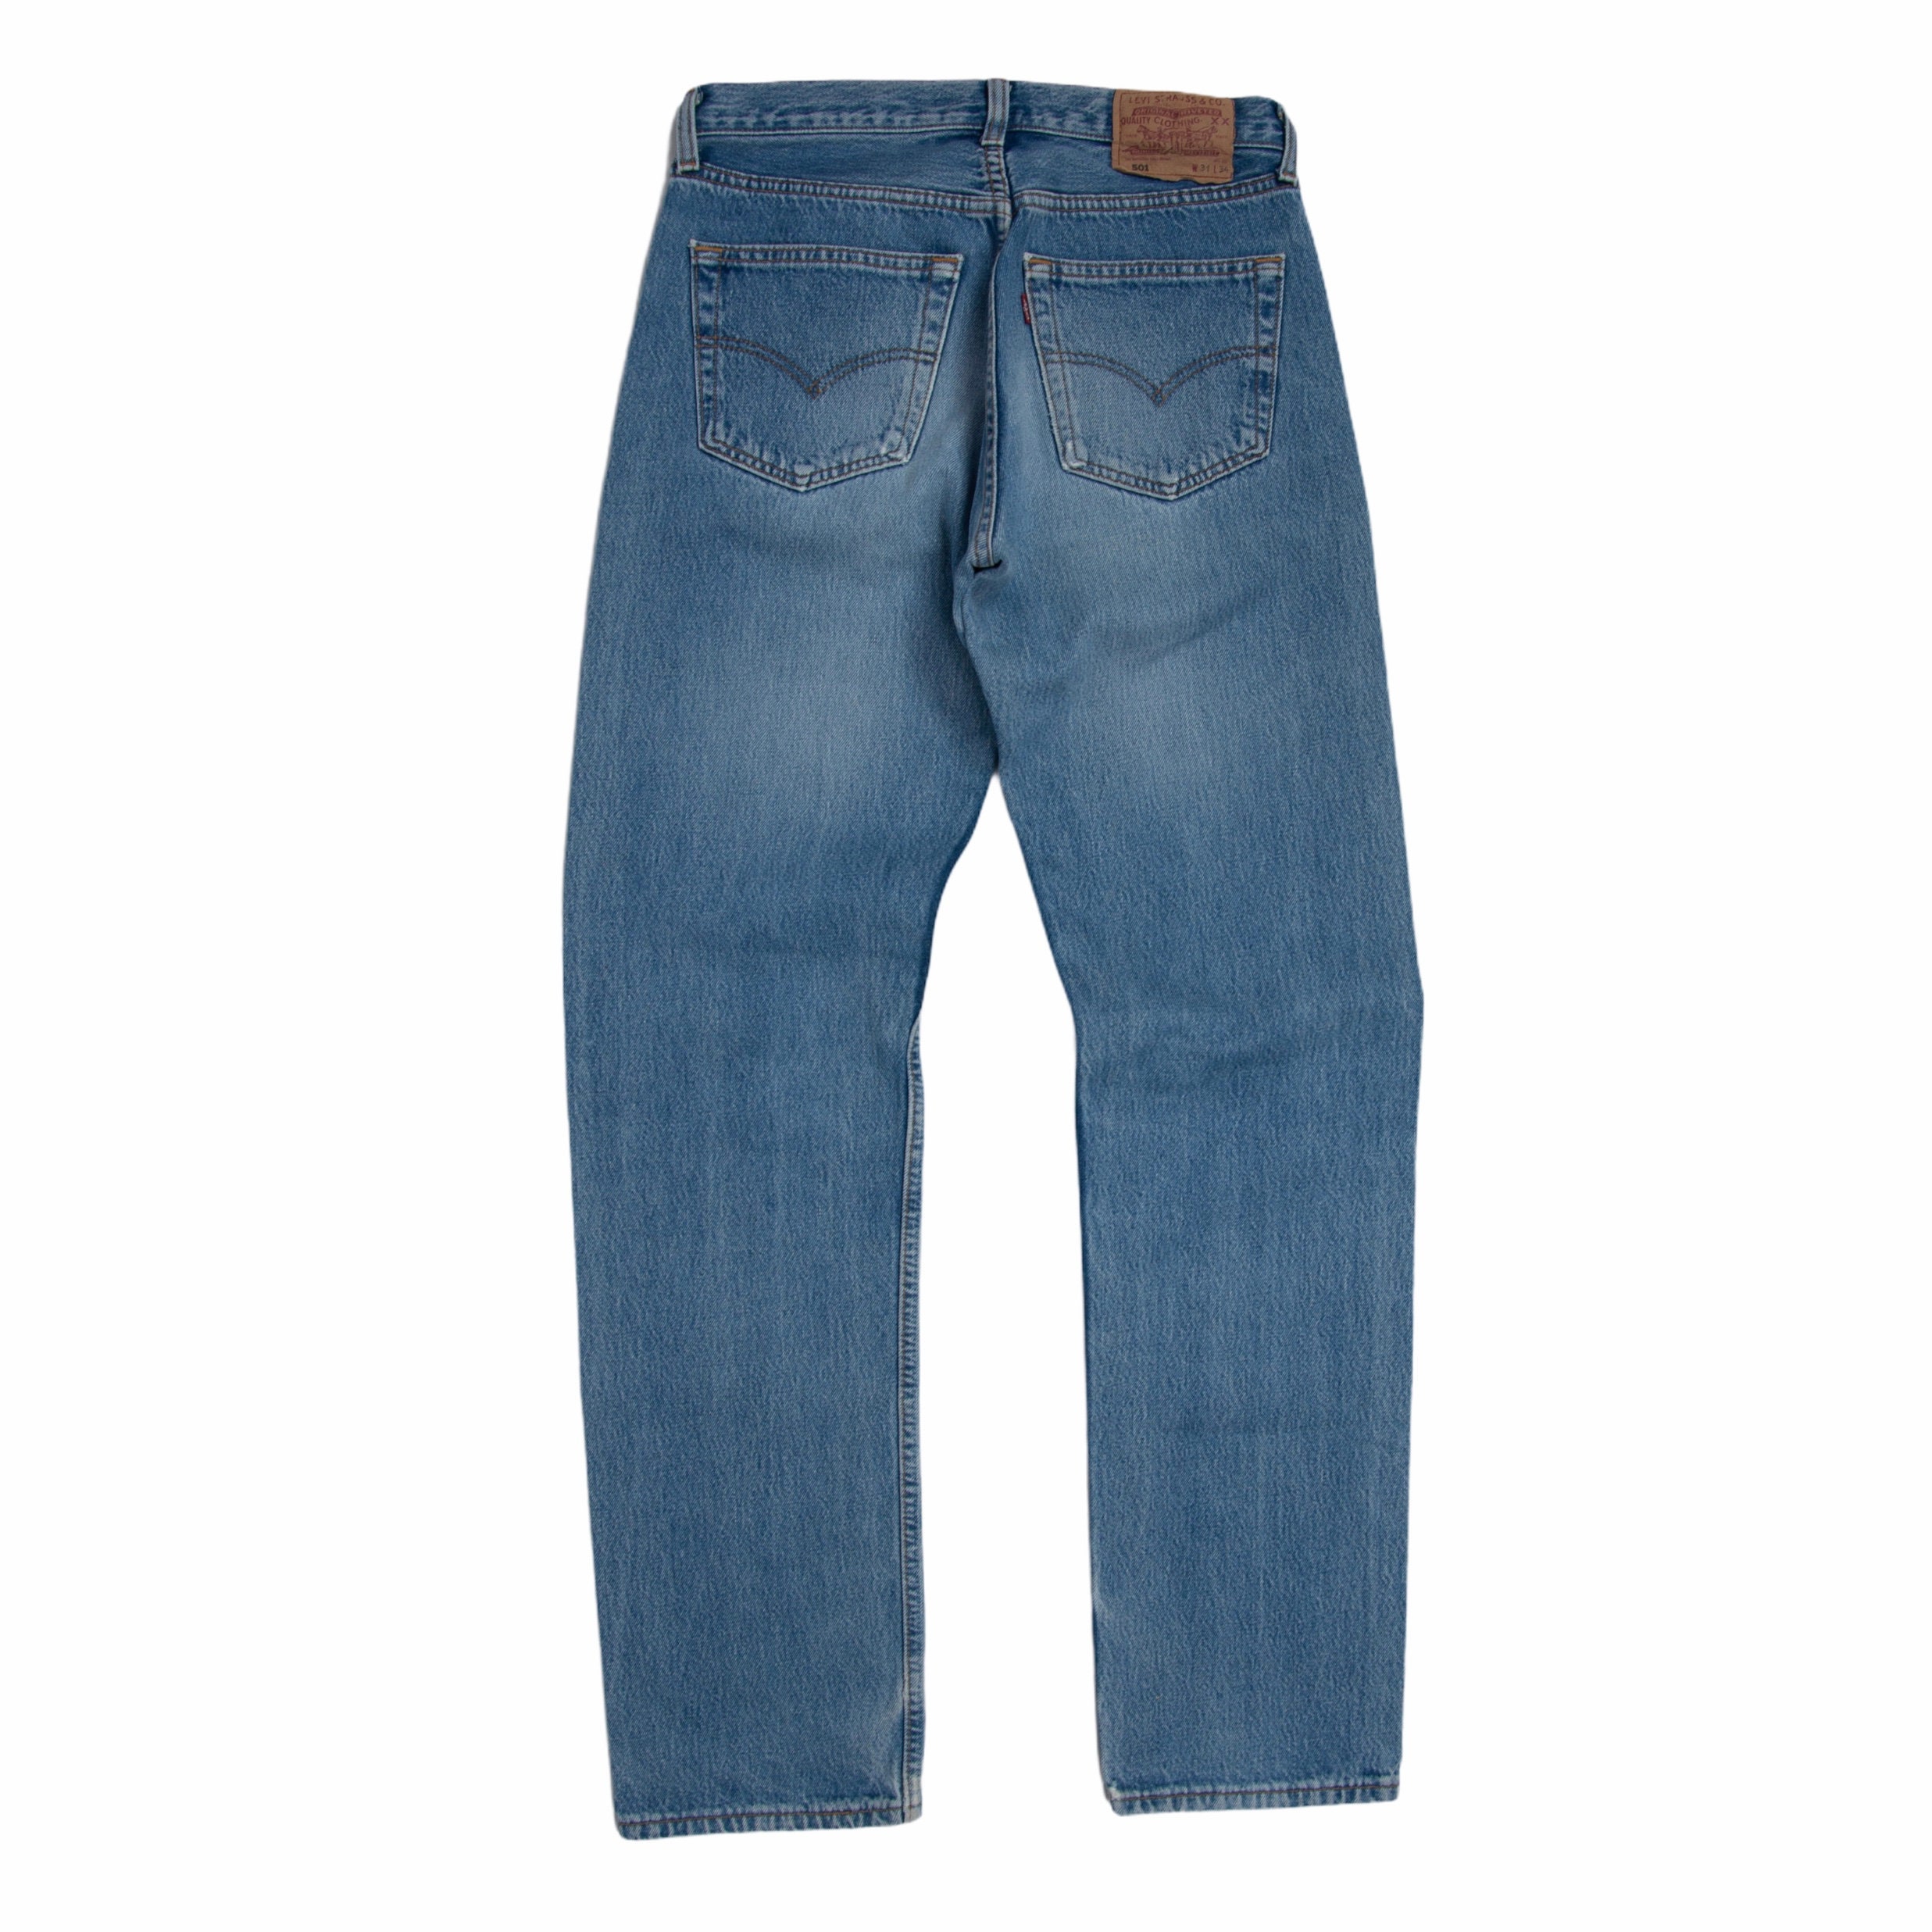 Vintage Levis 501 Stonewash Blue Straight Fit Jeans 31x34 | Etsy